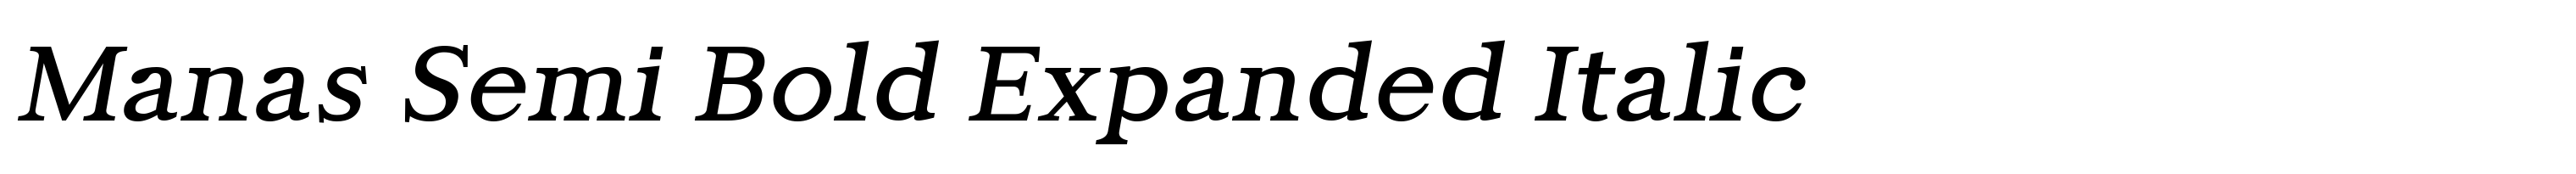 Manas Semi Bold Expanded Italic